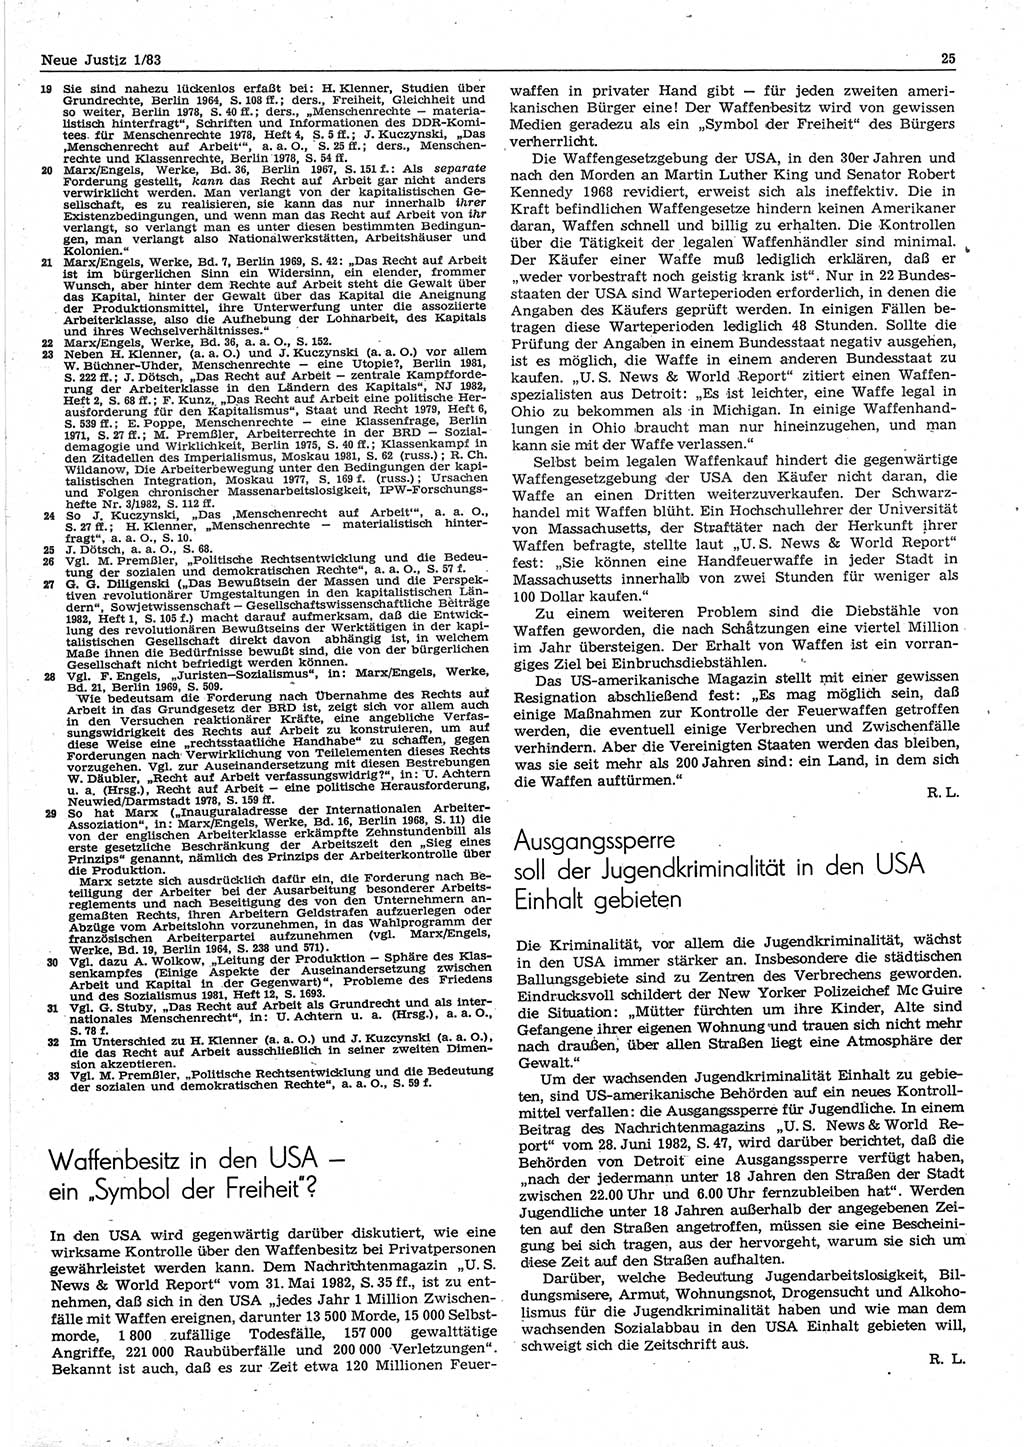 Neue Justiz (NJ), Zeitschrift für sozialistisches Recht und Gesetzlichkeit [Deutsche Demokratische Republik (DDR)], 37. Jahrgang 1983, Seite 25 (NJ DDR 1983, S. 25)